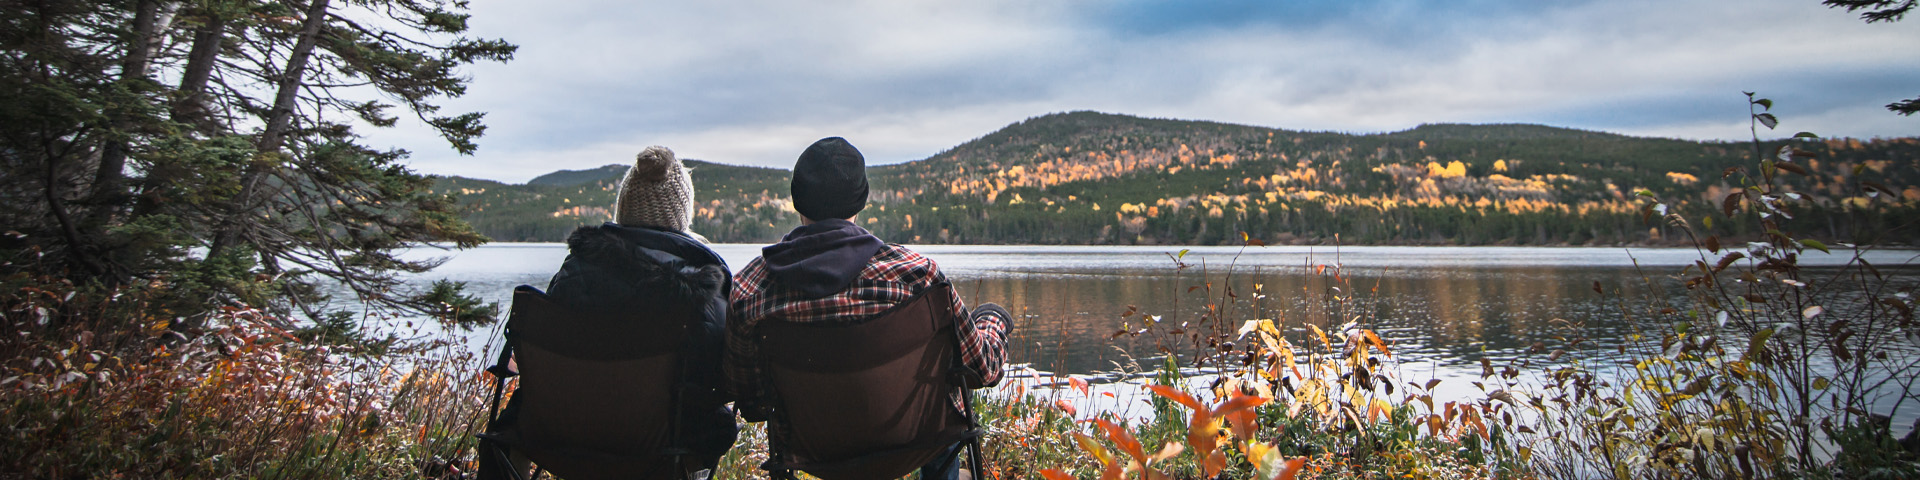 deux individus portant des bonnets de laine, assis dans des chaises de camping, surplombant une scène d'automne